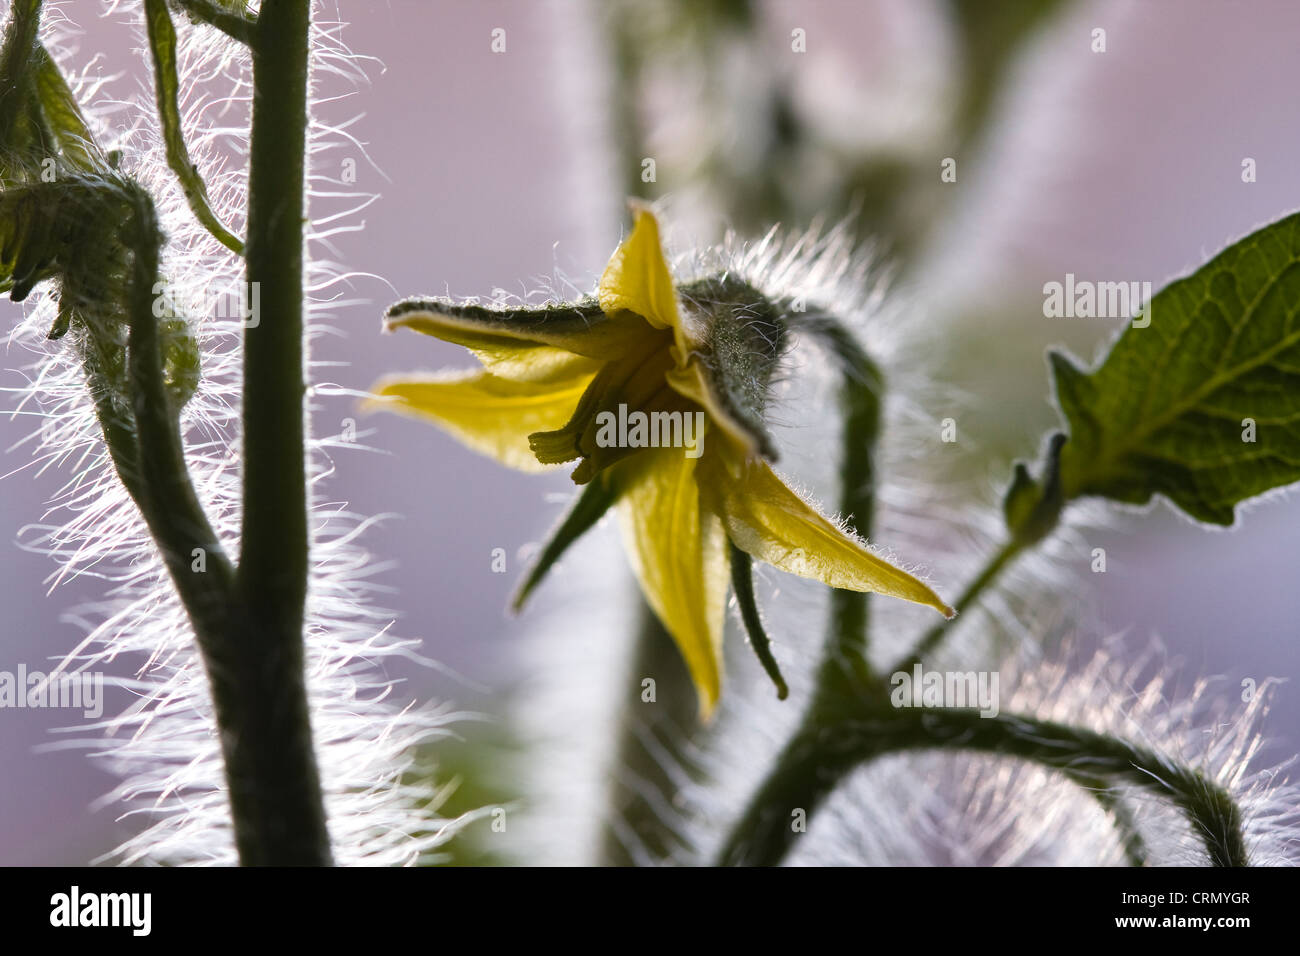 Tomaten Pflanze Blüte zeigt gelbe Blütenteile, Blätter, Stiele und Trichomen. Stockfoto